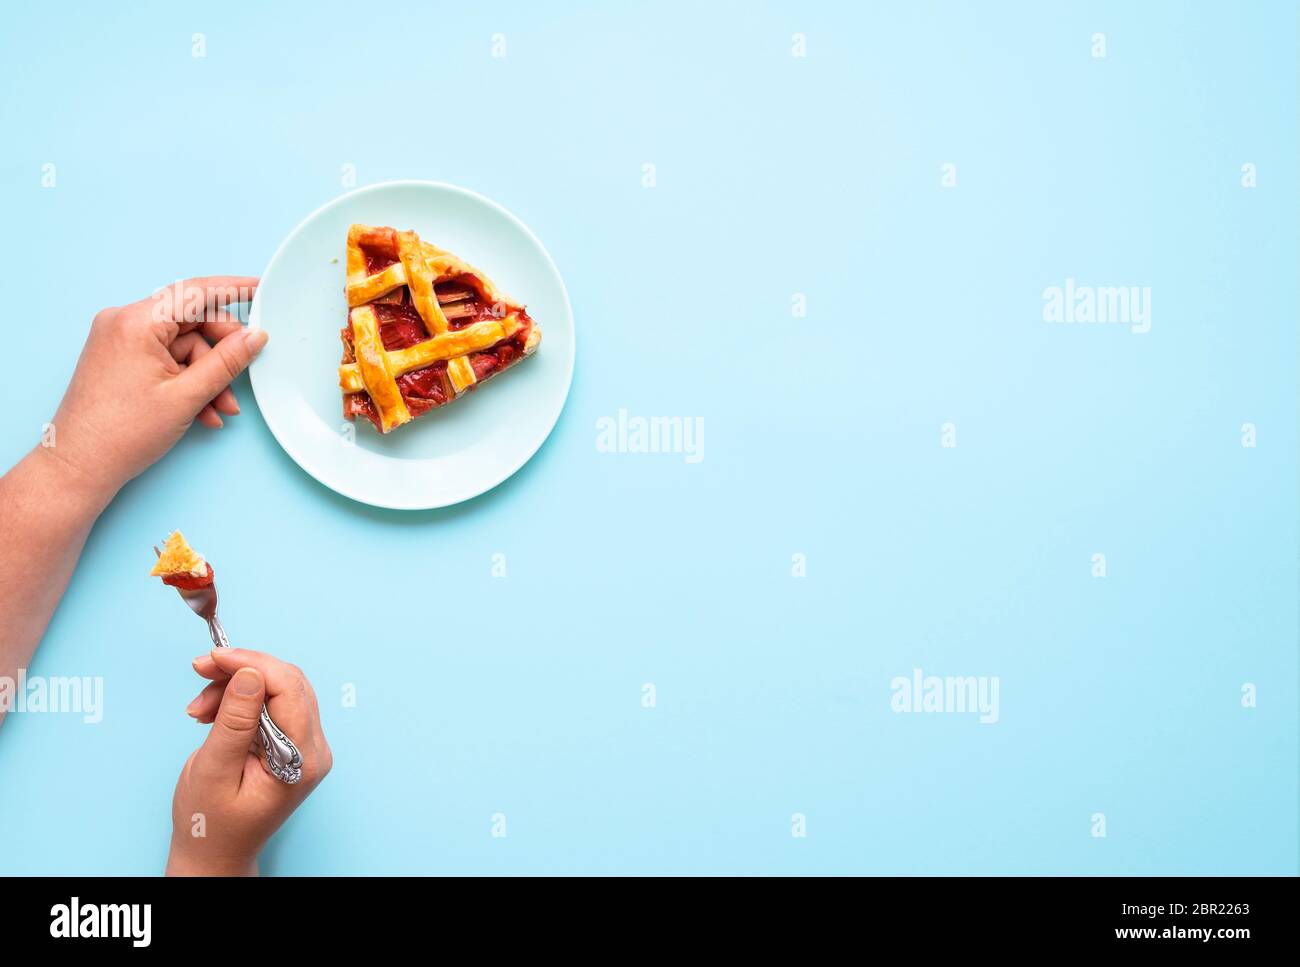 Manger un morceau de rhubarbe et de tarte aux fraises sur fond bleu. Plat de la femme ayant une tranche de gâteau de rhubarbe. Délicieux dessert allemand. Banque D'Images